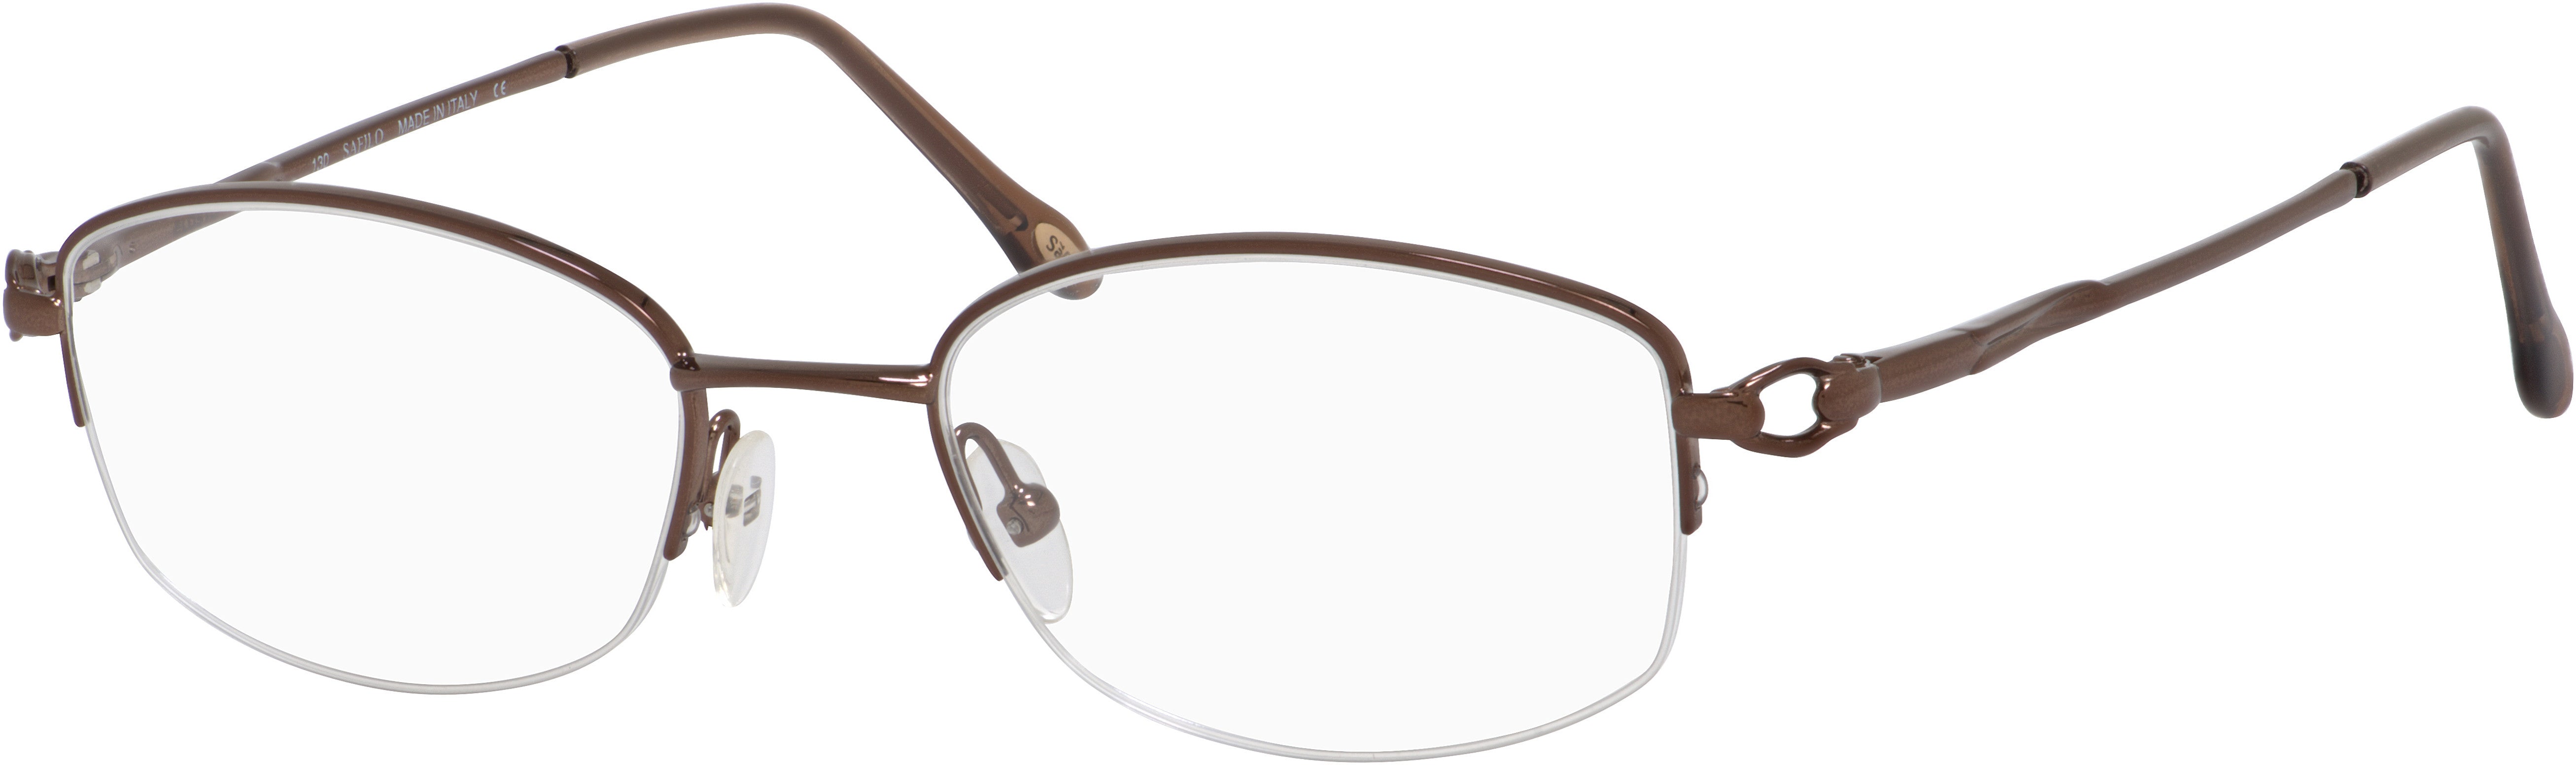  Emozioni 4321/N Oval Modified Eyeglasses 0NBR-0NBR  Brown (00 Demo Lens)